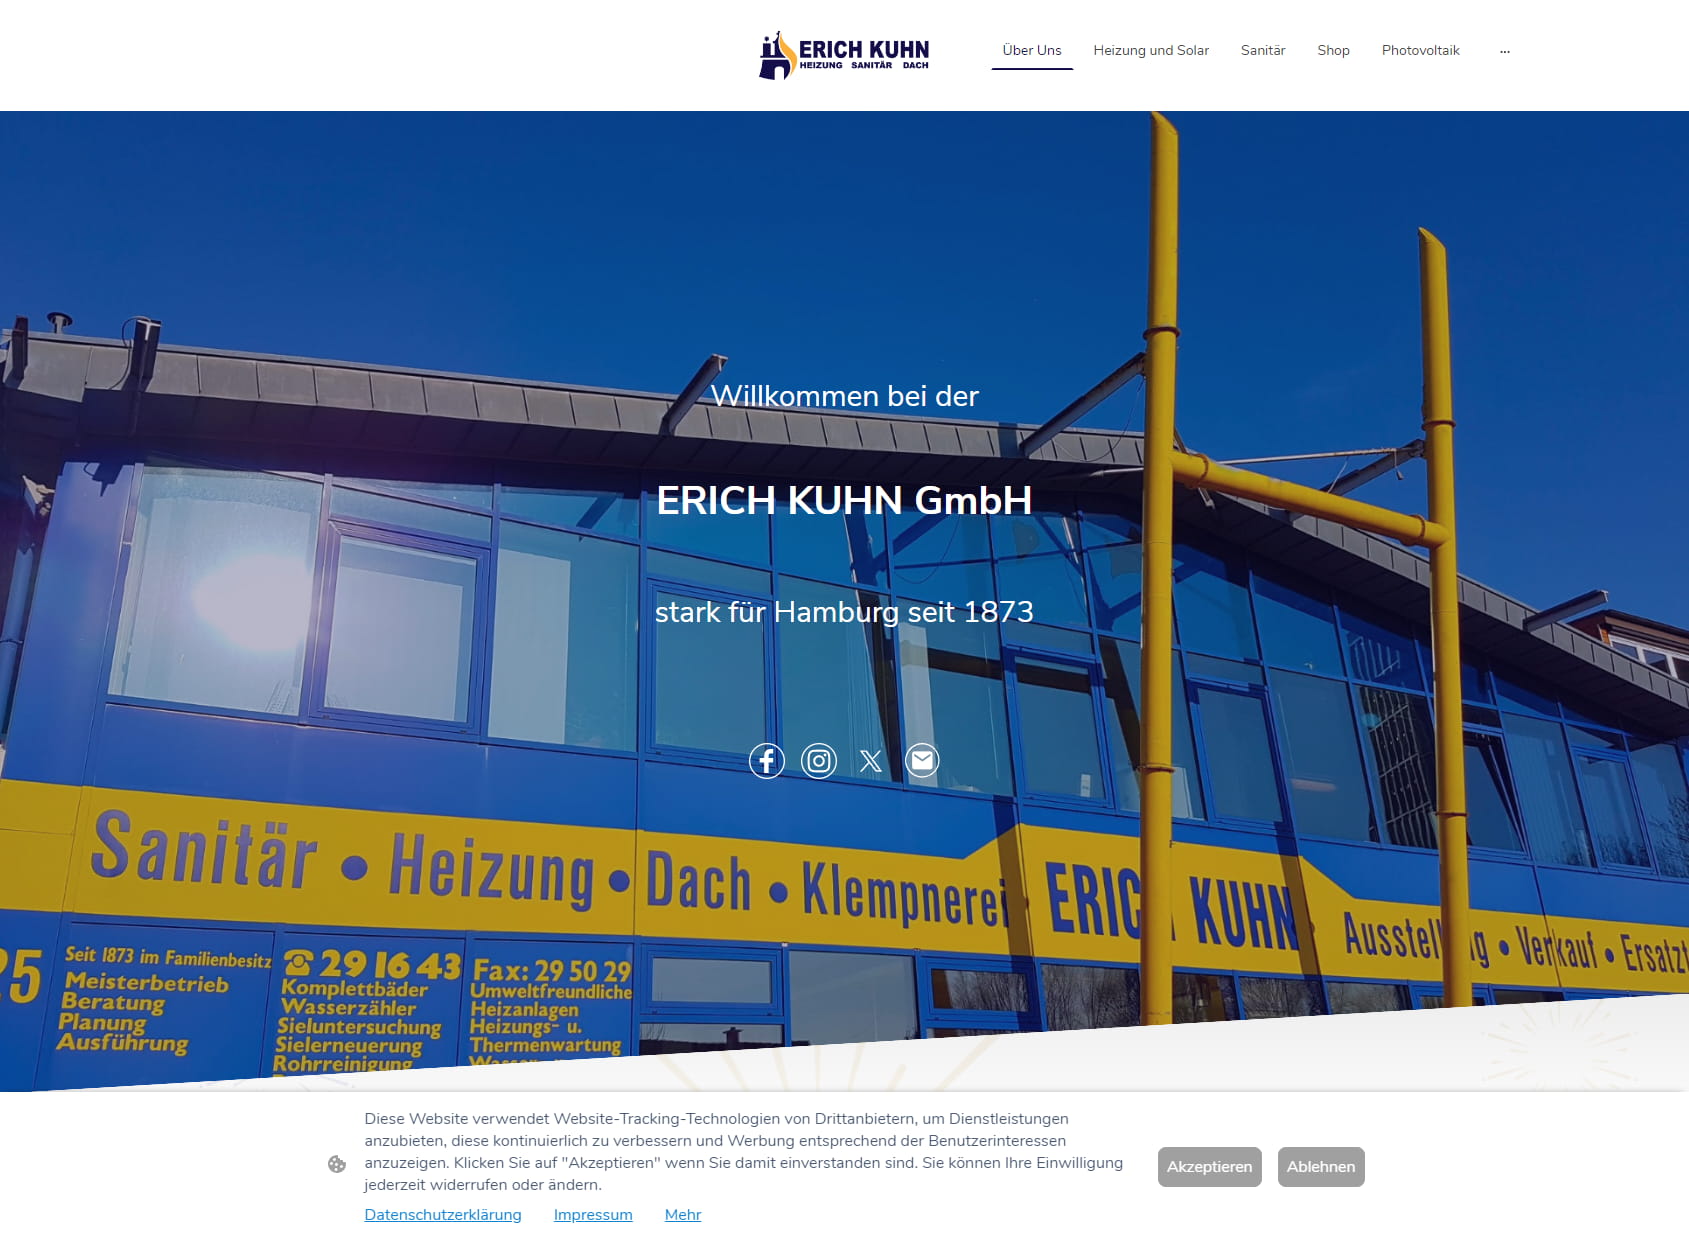 Erich Kuhn GmbH Heizung und Sanitär in Hamburg seit 1873